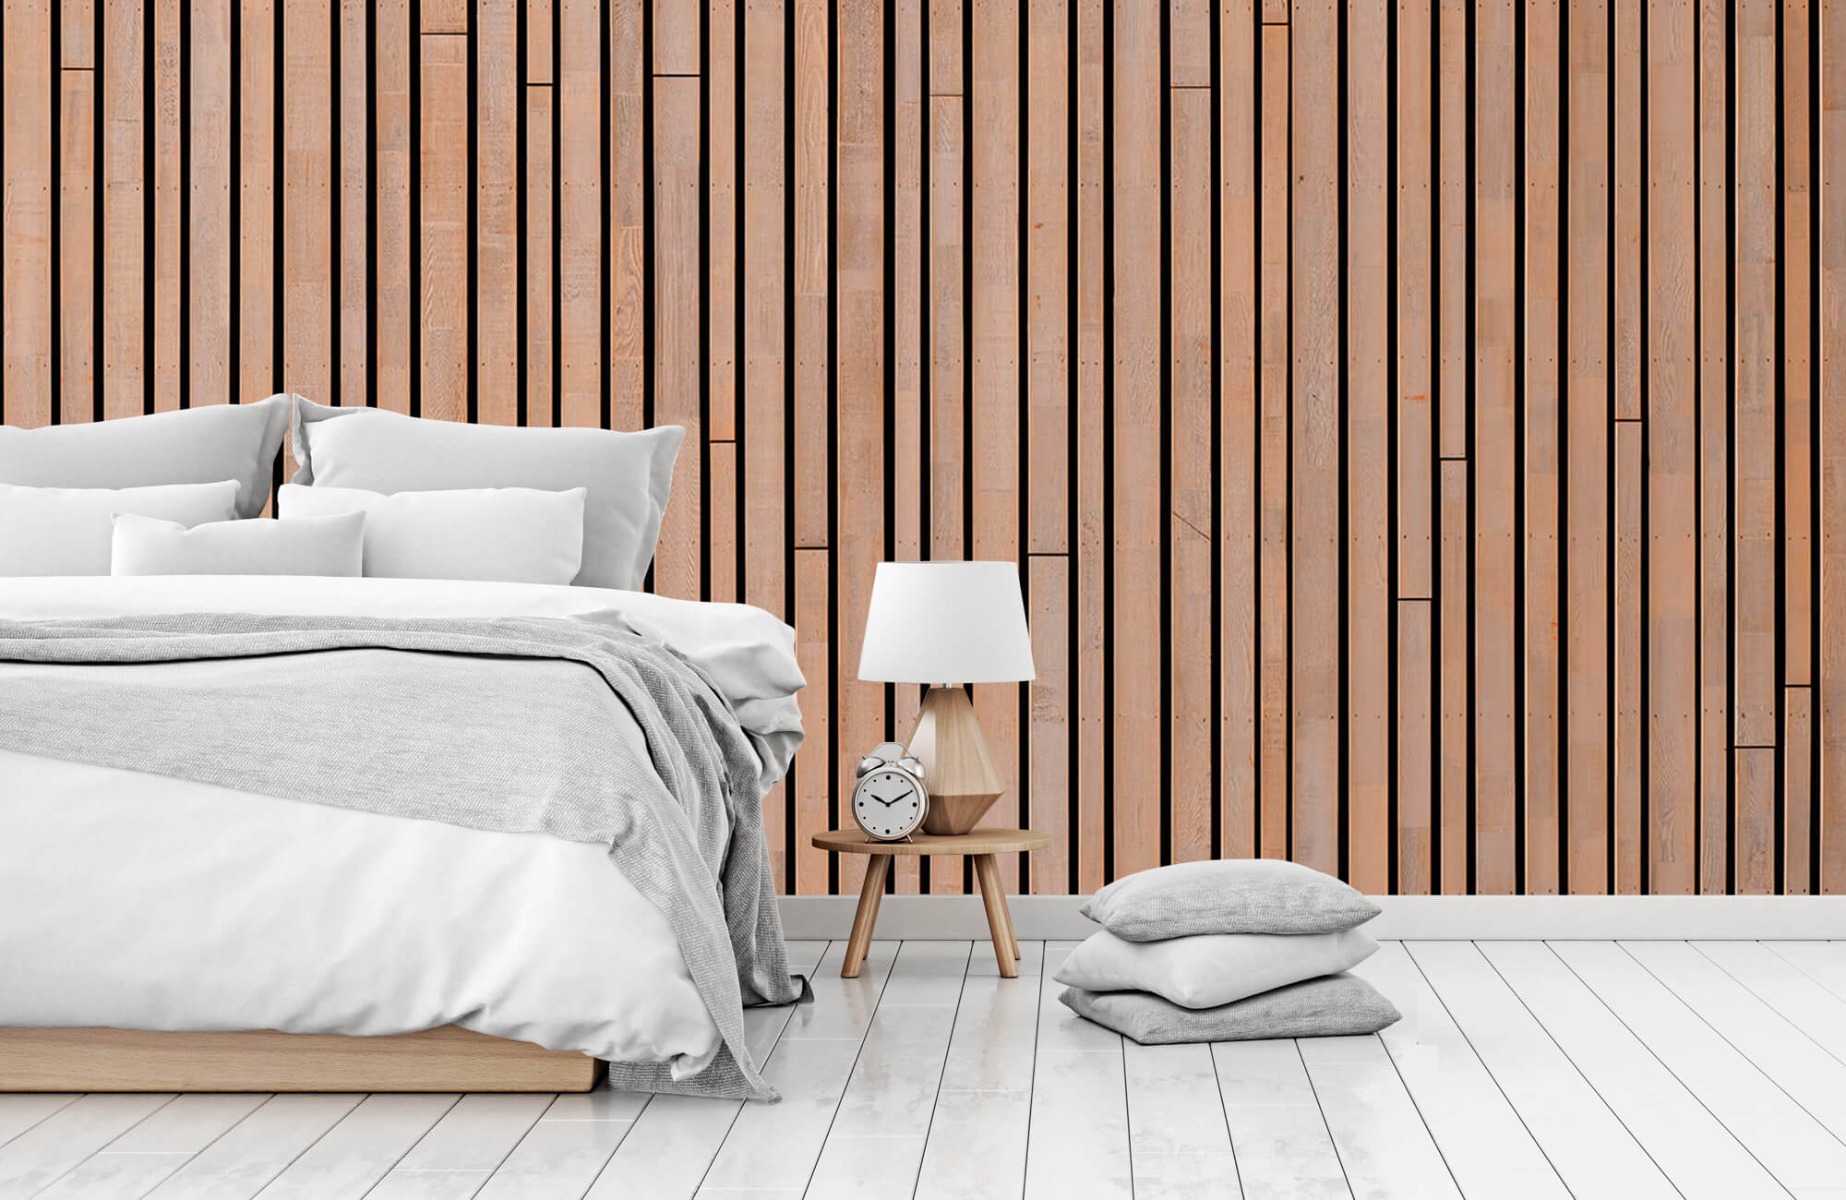 Wooden wallpaper - Wooden planks  - Bedroom 1